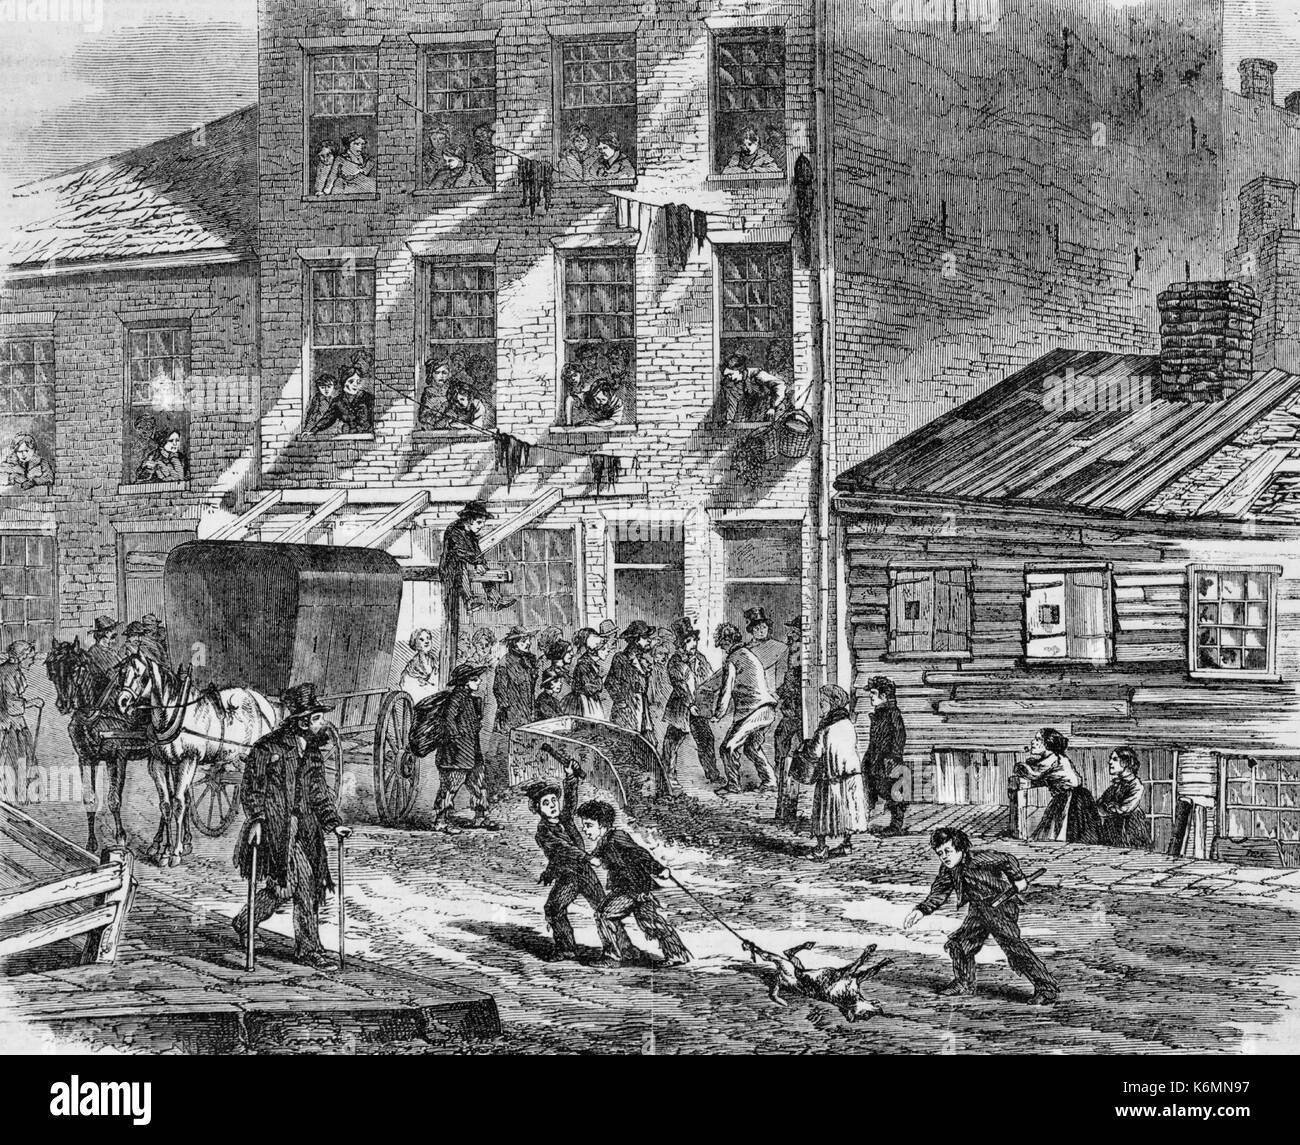 Das Ende der Armen - Beerdigung von einem Mietshaus in Baxter Street, fünf Punkte, New York, 1865. Gruppe von Menschen versammelten sich vor Tenement House watch Männer führen einen Sarg, in der Straße, zwei Jungen ziehen Sie einen Hund von einem Bein. Stockfoto